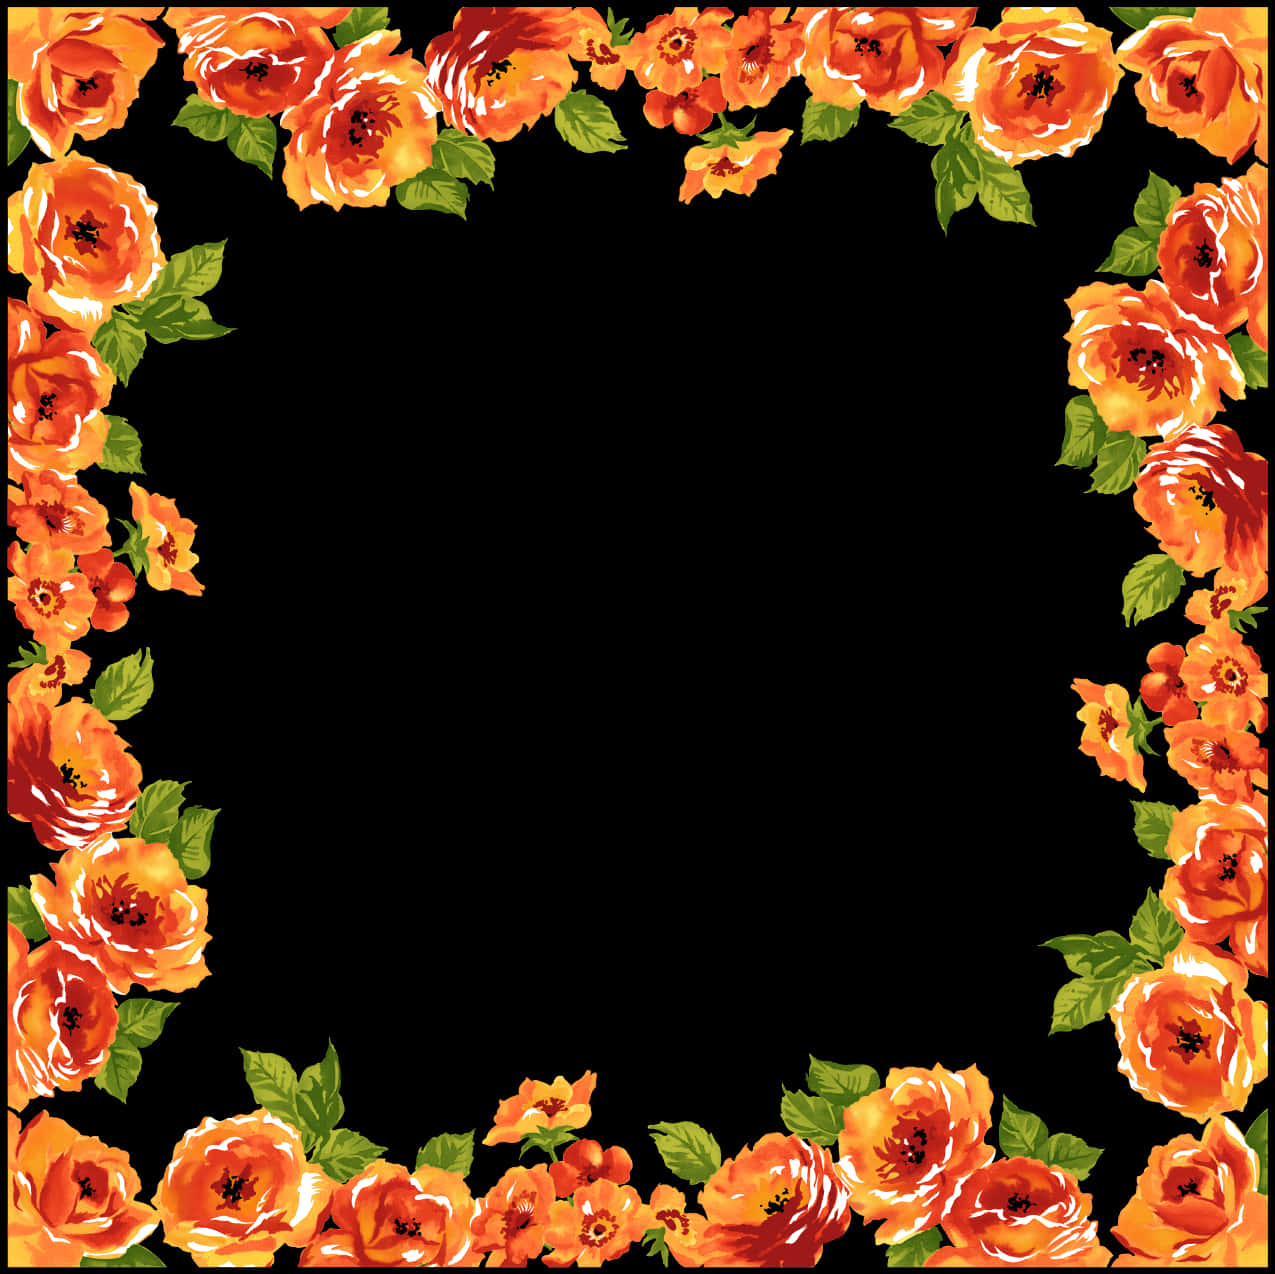 Download Floral Frame Black Background | Wallpapers.com